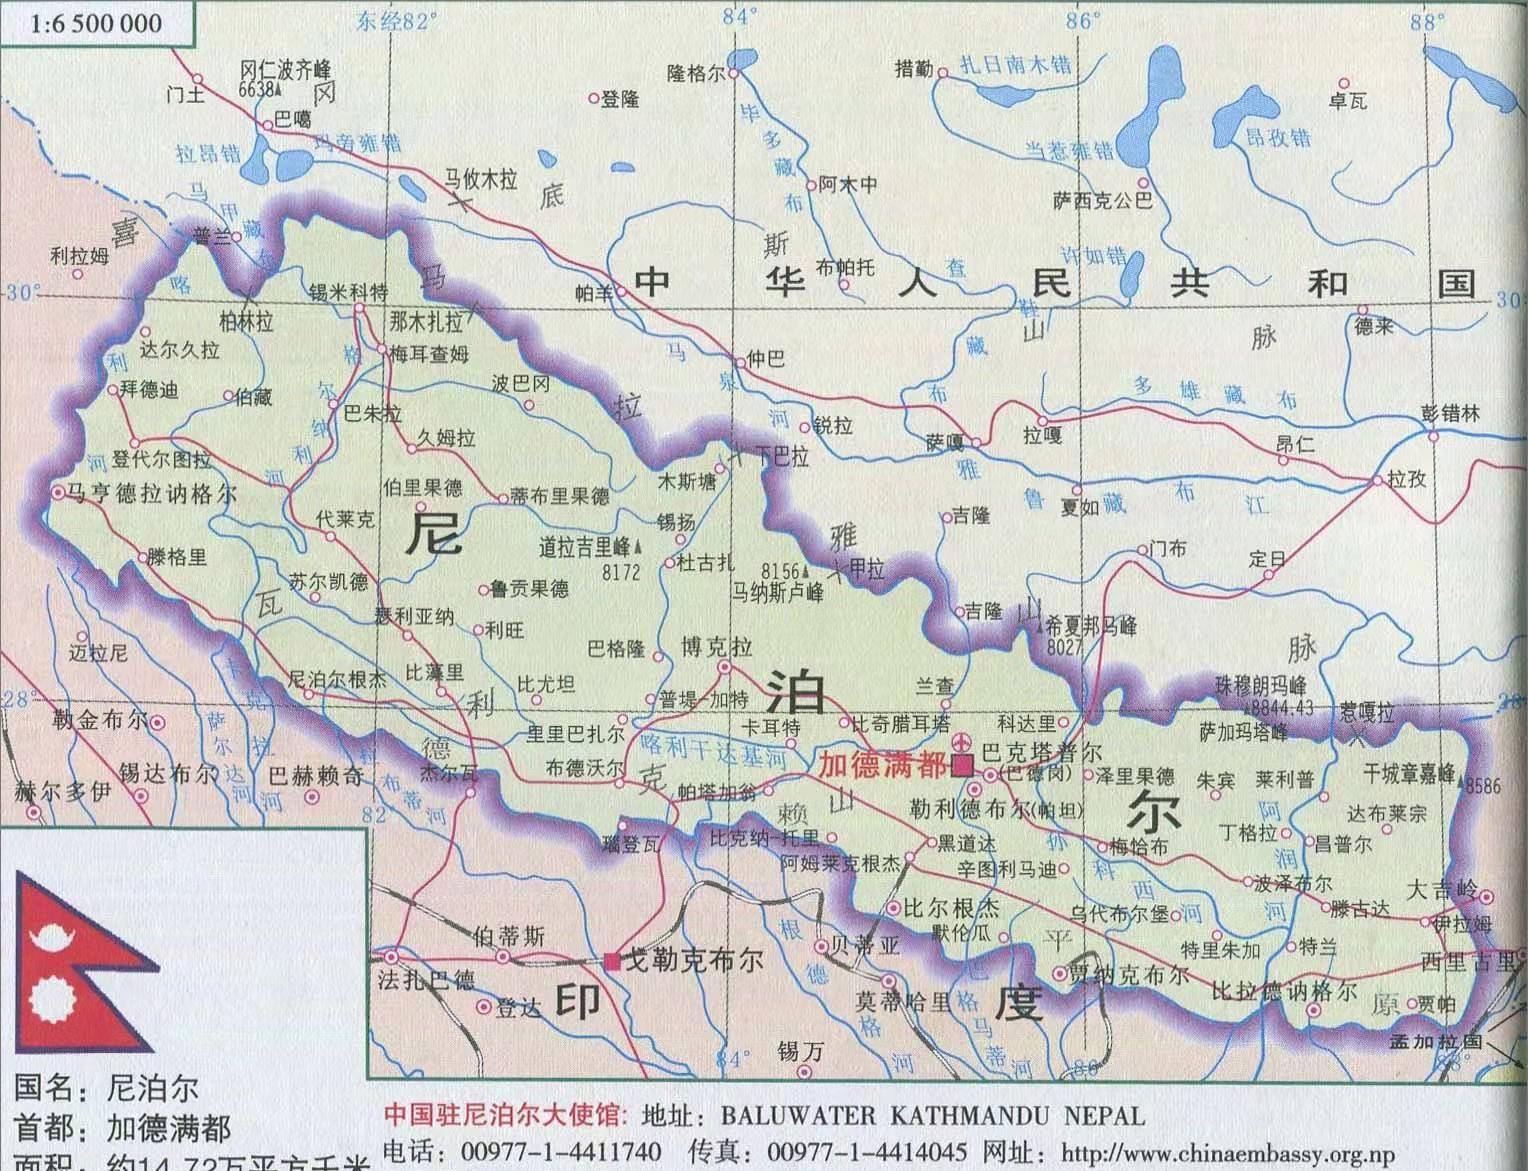 尼泊尔国家地图夏季,南方加德满都河谷地带,气温可达45度,而在北部